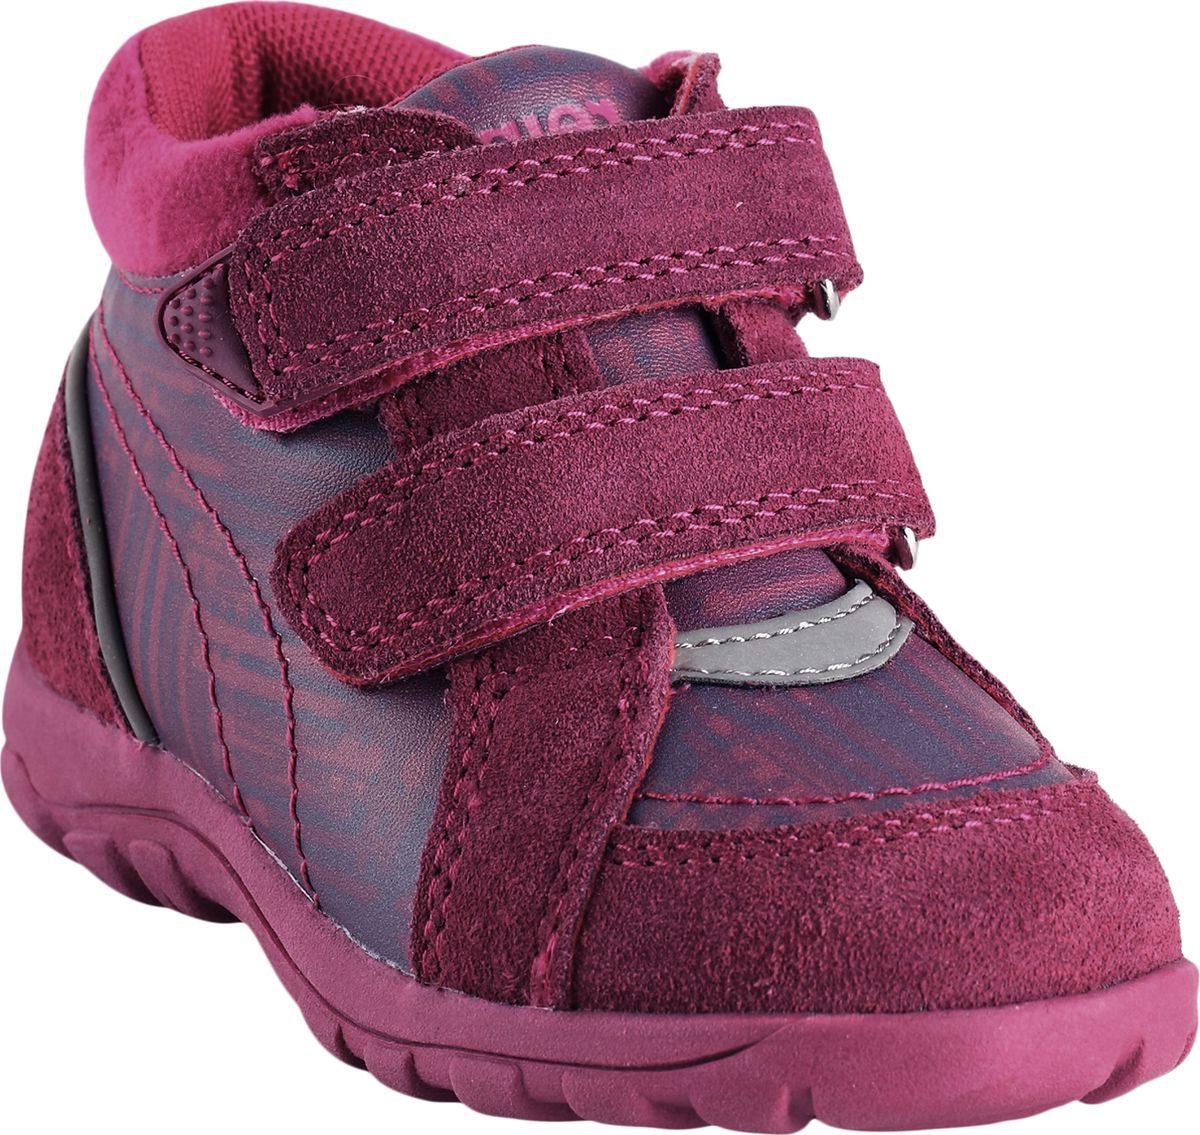 Ботинки детские Reima Lotte, цвет: розовый. 5693503691. Размер 23